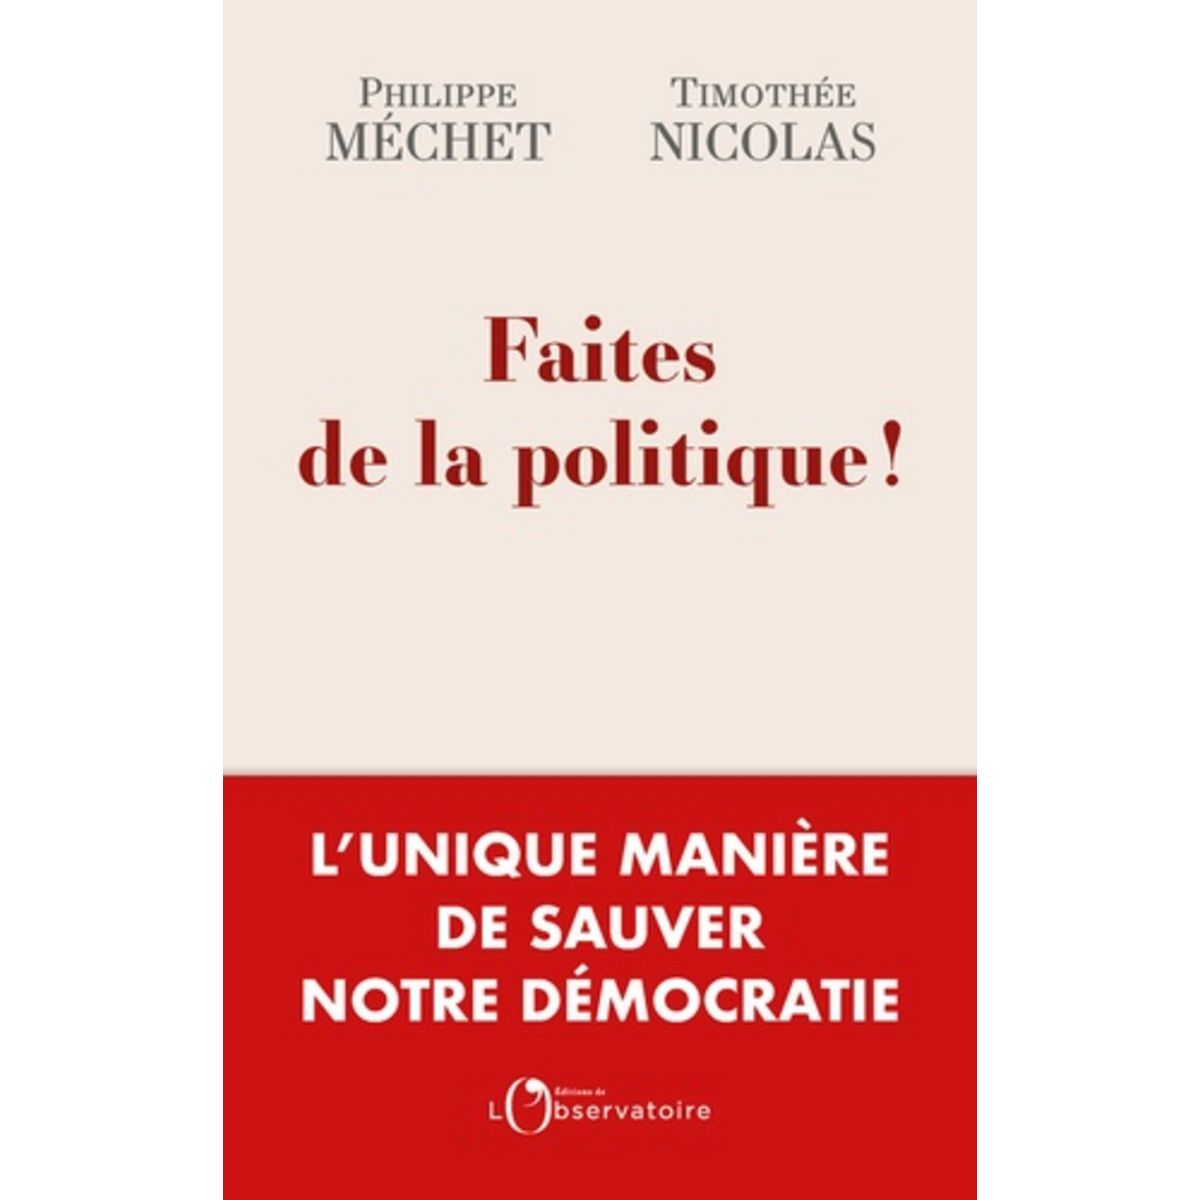  FAITES  DE LA POLITIQUE !, Méchet Philippe